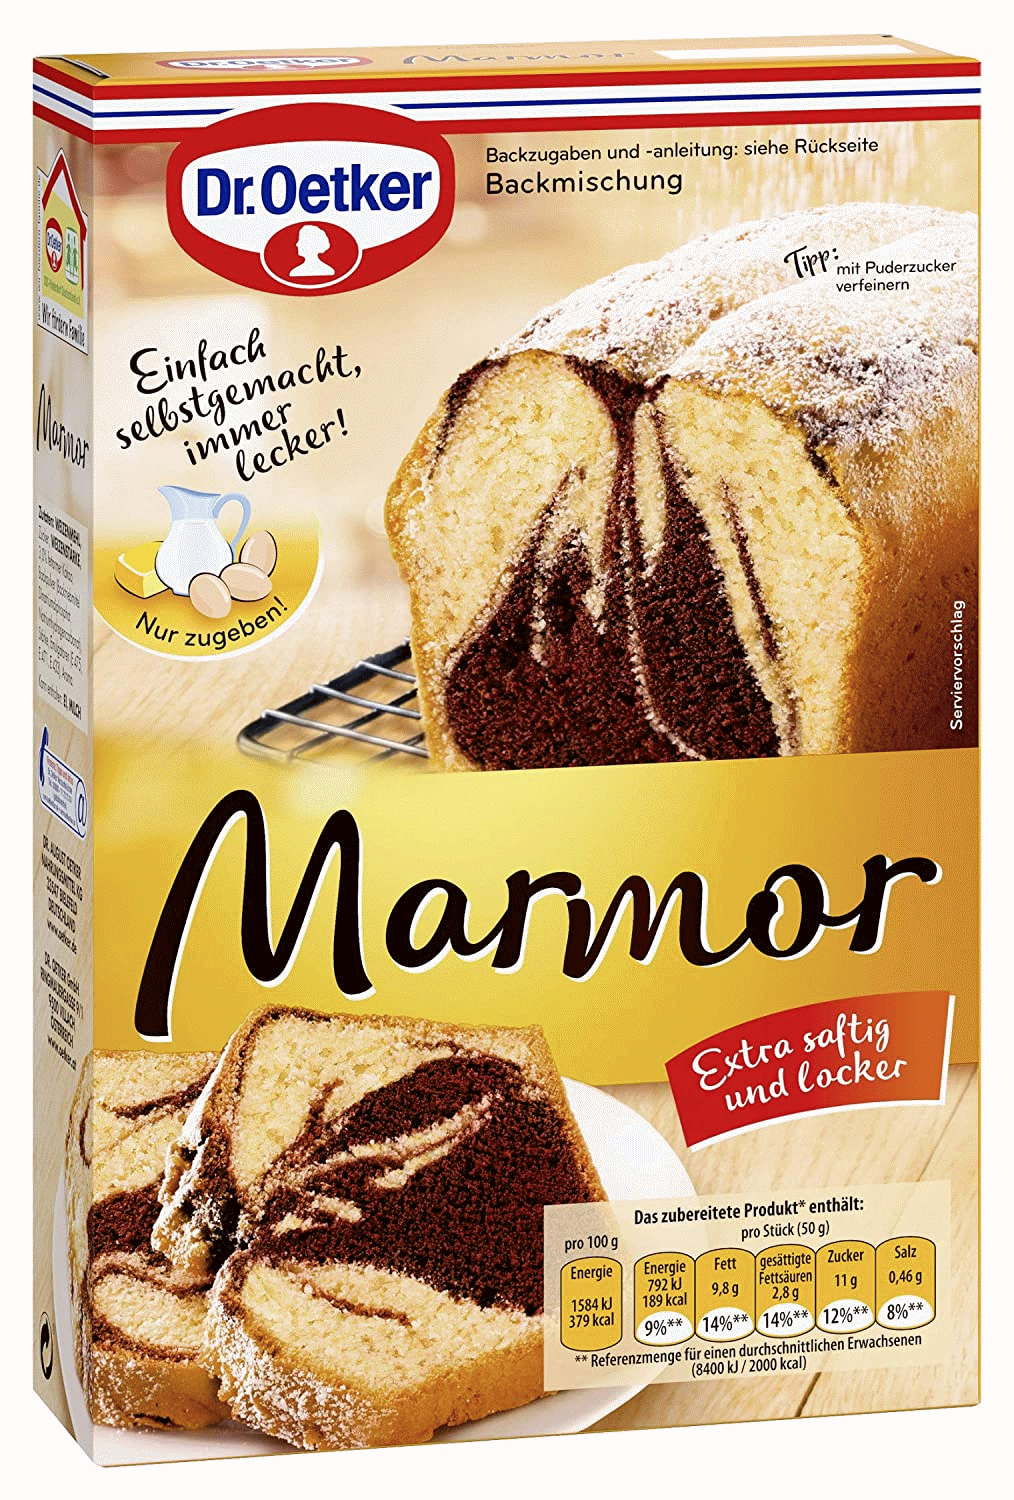 Koreaans verzonden belegd broodje Dr. Oetker marble cake mix - Brands of Germany